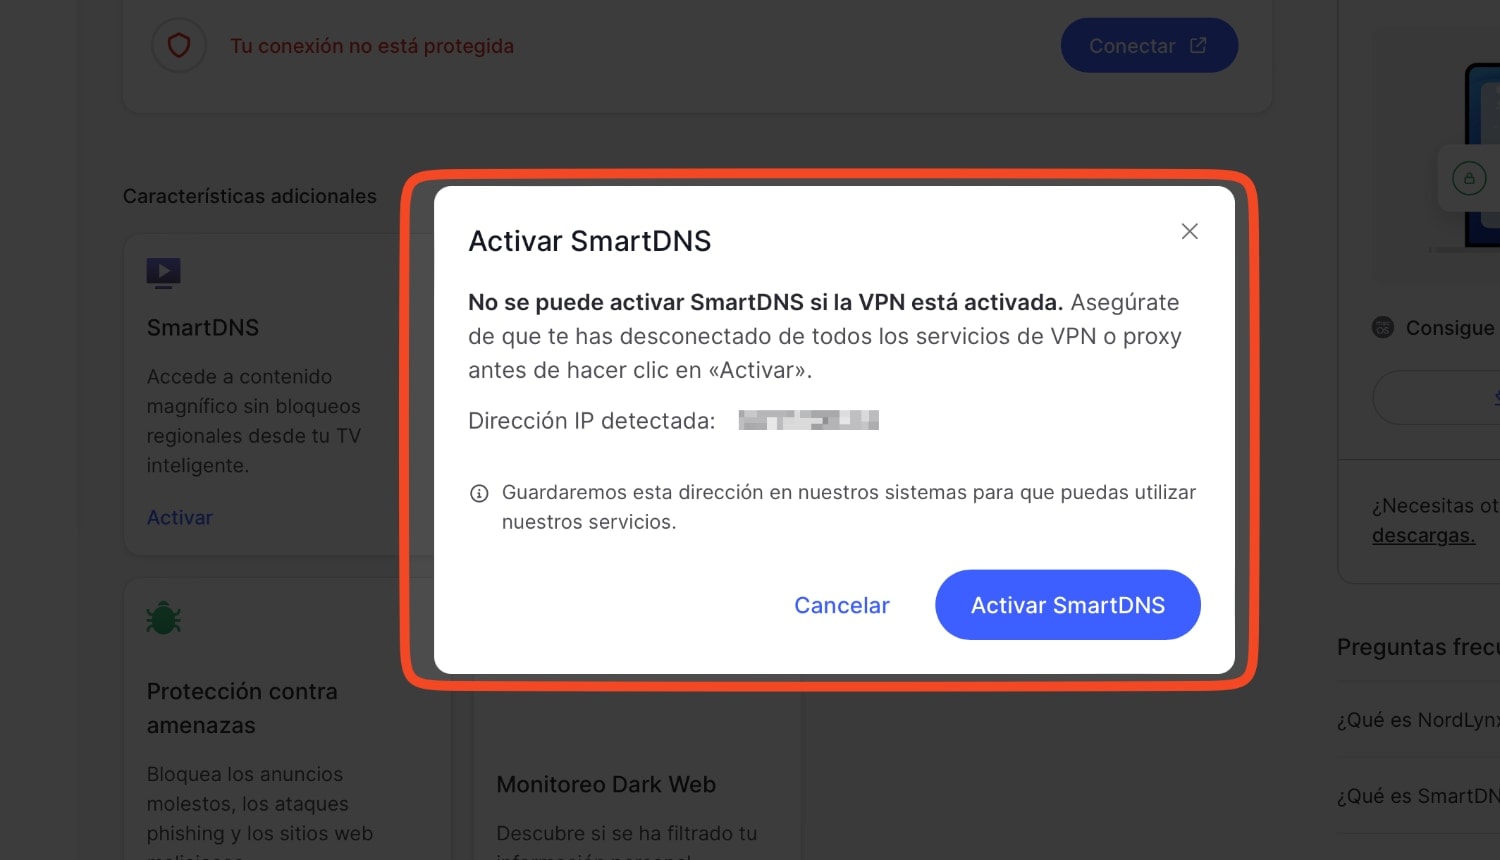 Servicios > NordVPN > Características adicionales: SmartDNS de NordVPN. Lo activamos con la IP que tenemos sin una VPN activa. 